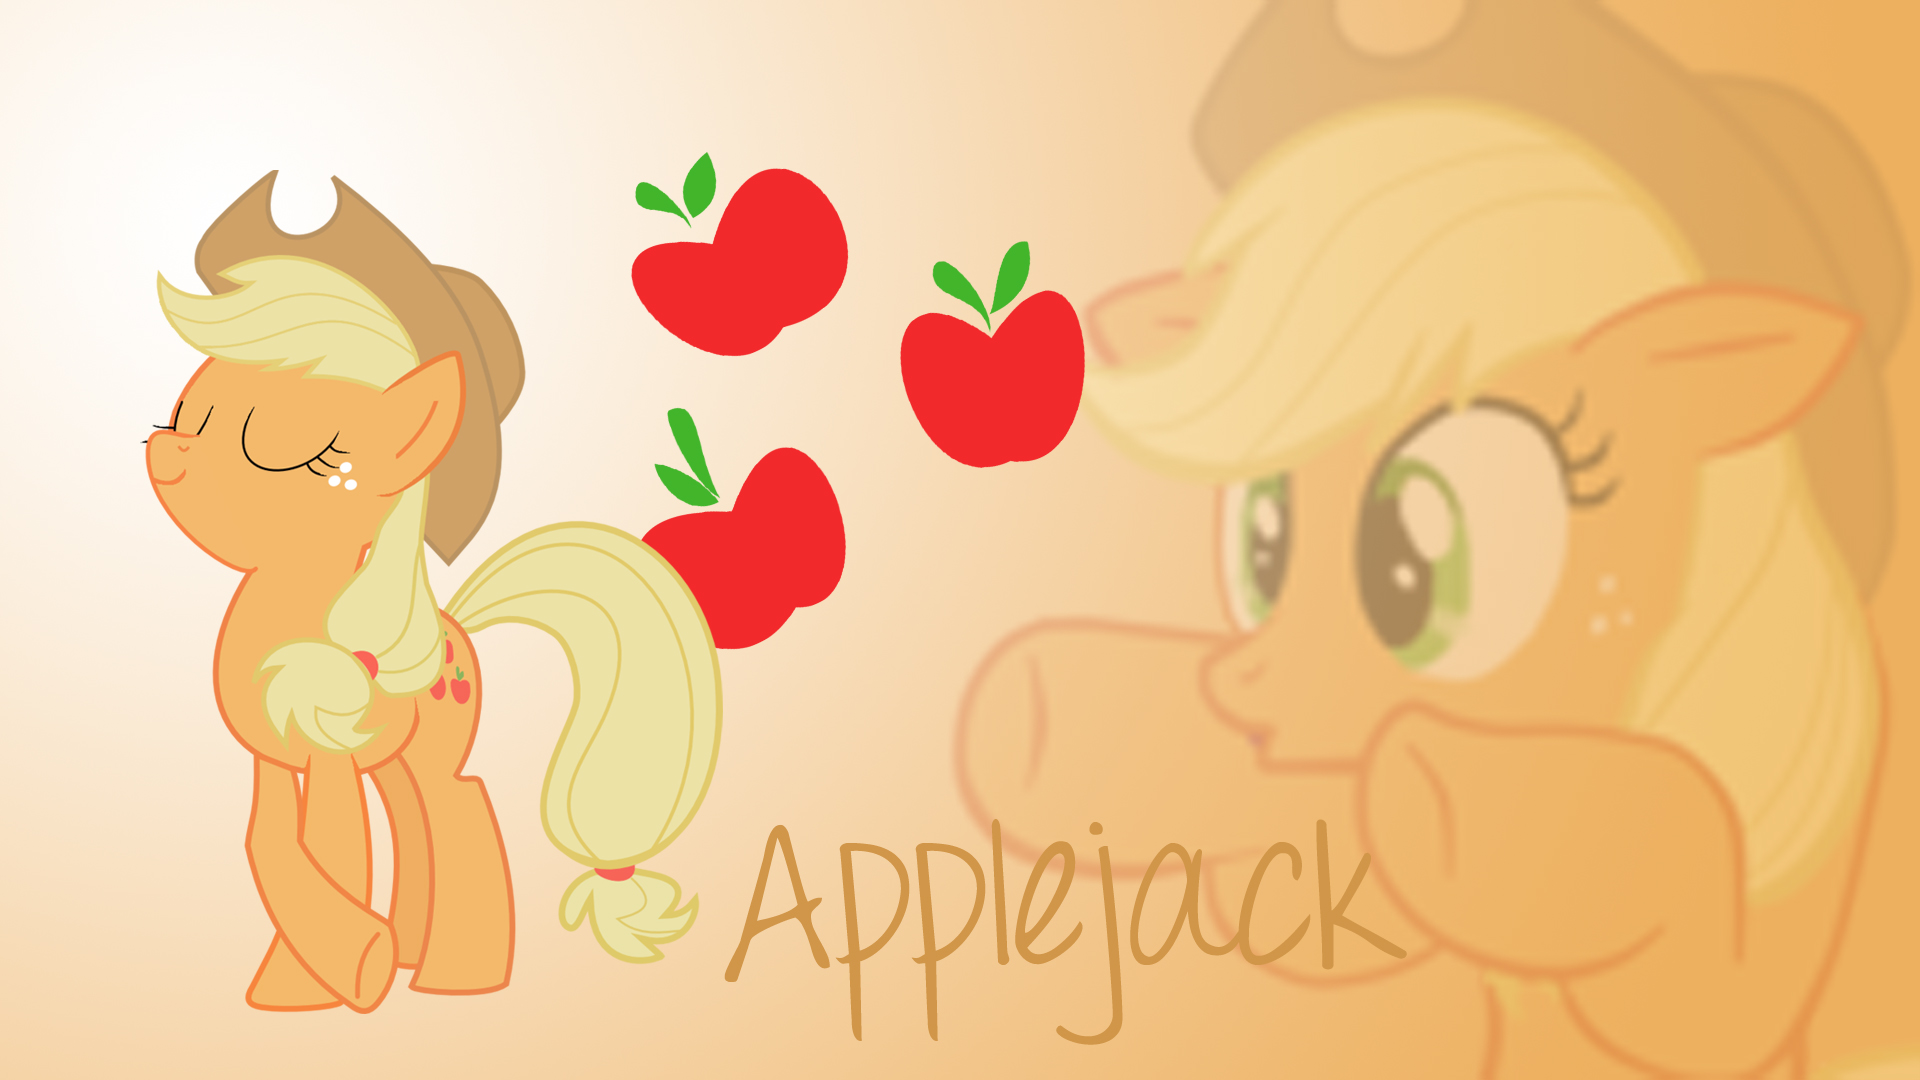 Applejack Wallpaper by MrIndecisive